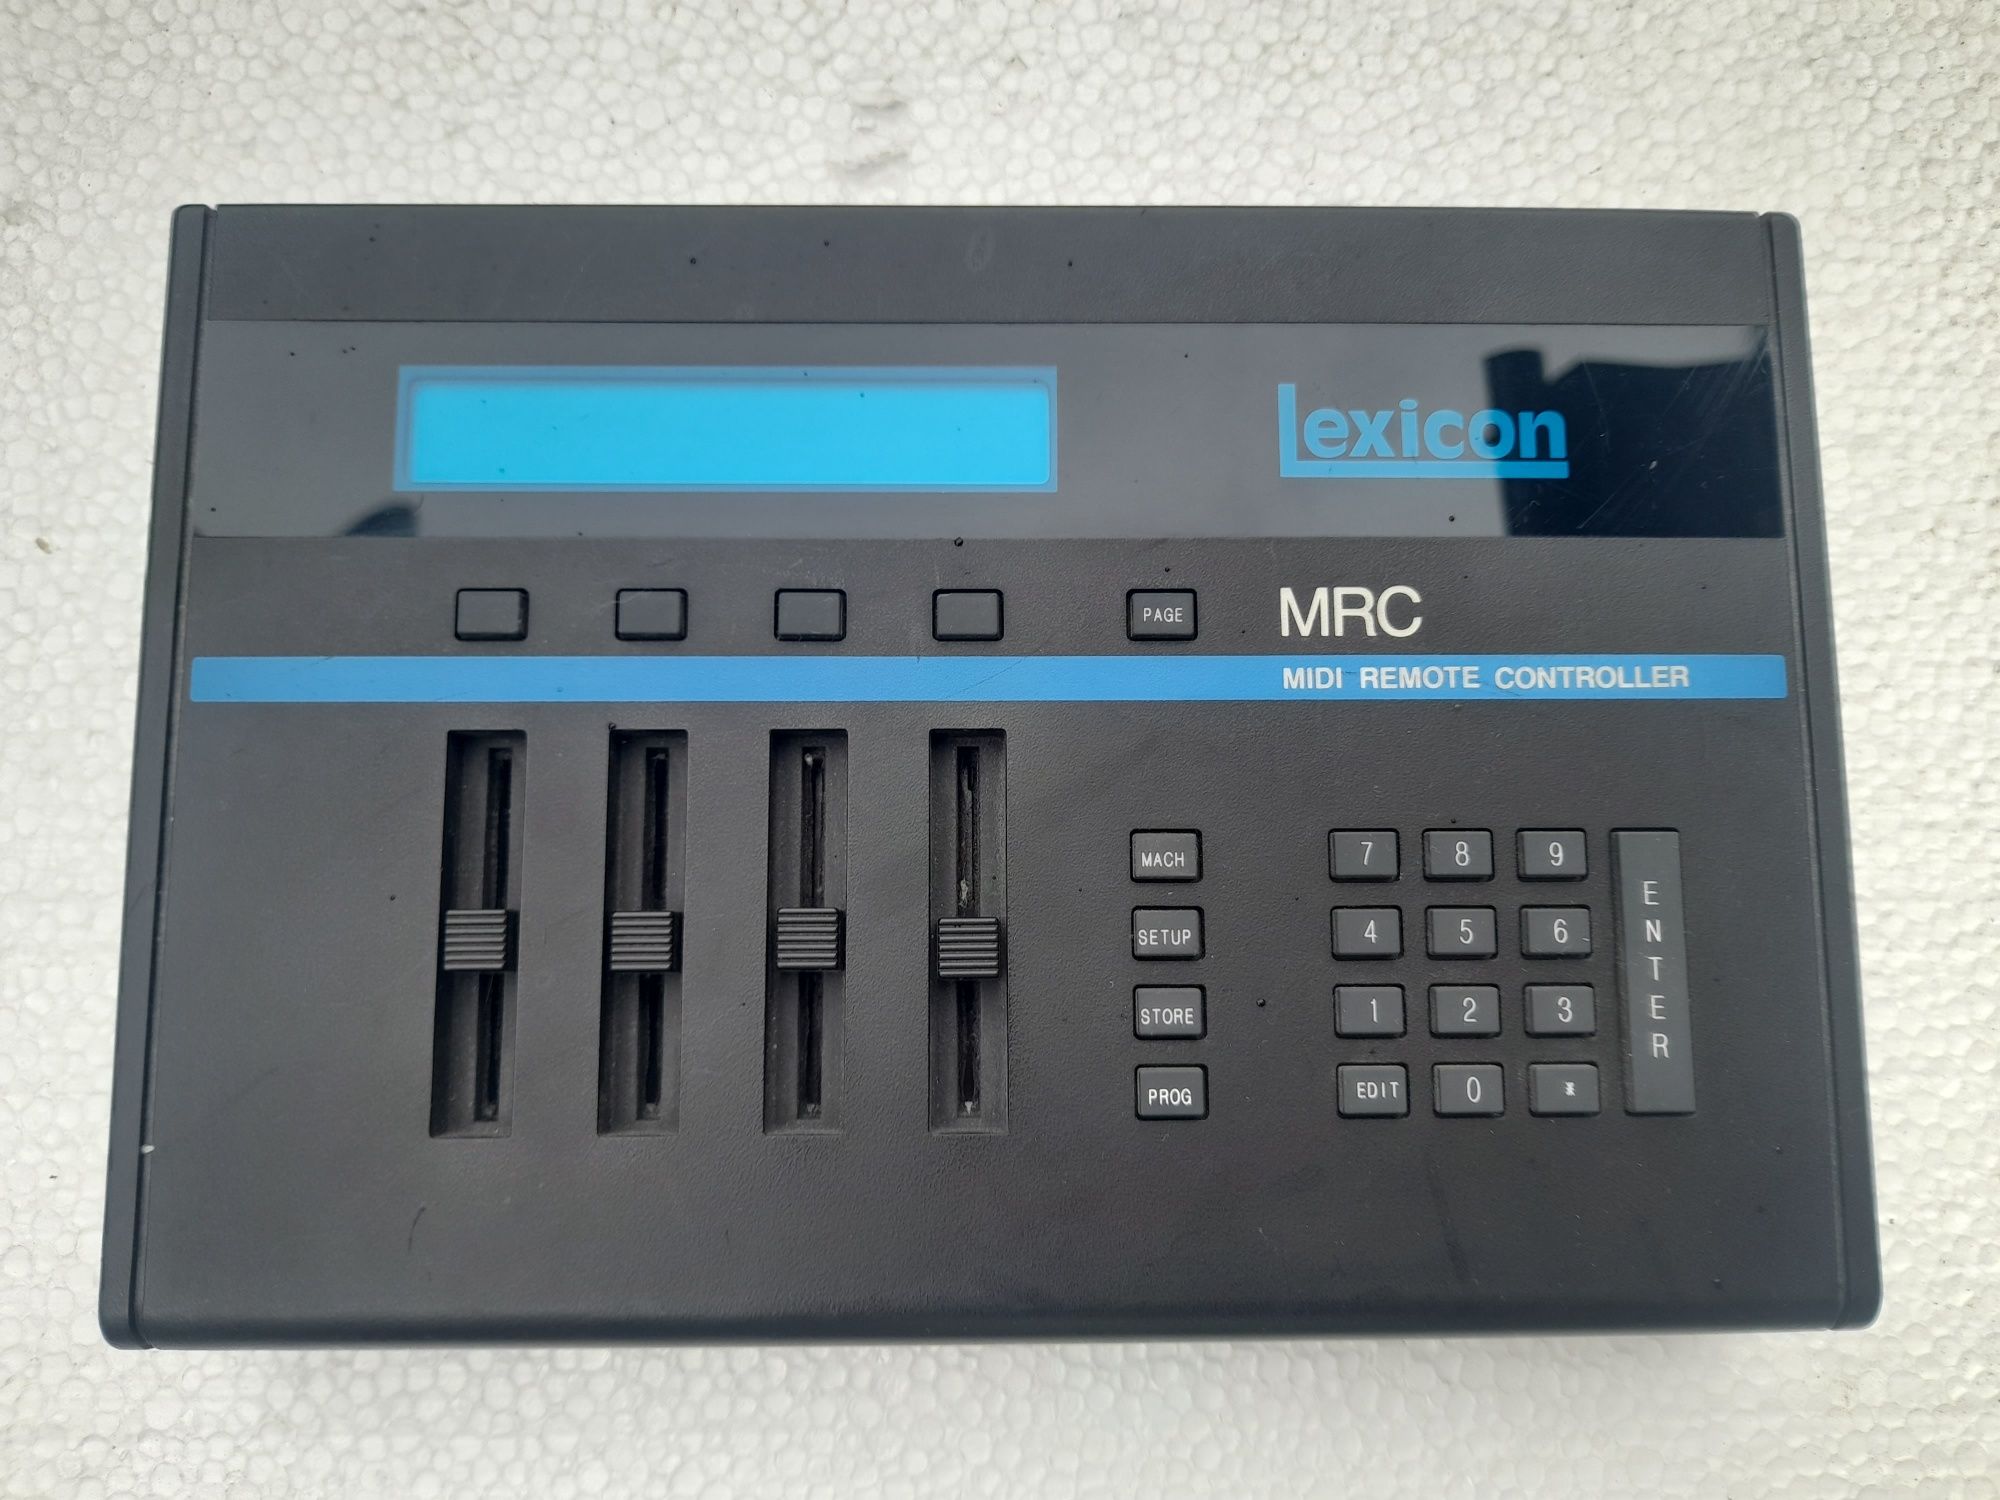 Lexicon MRC midi remote controller